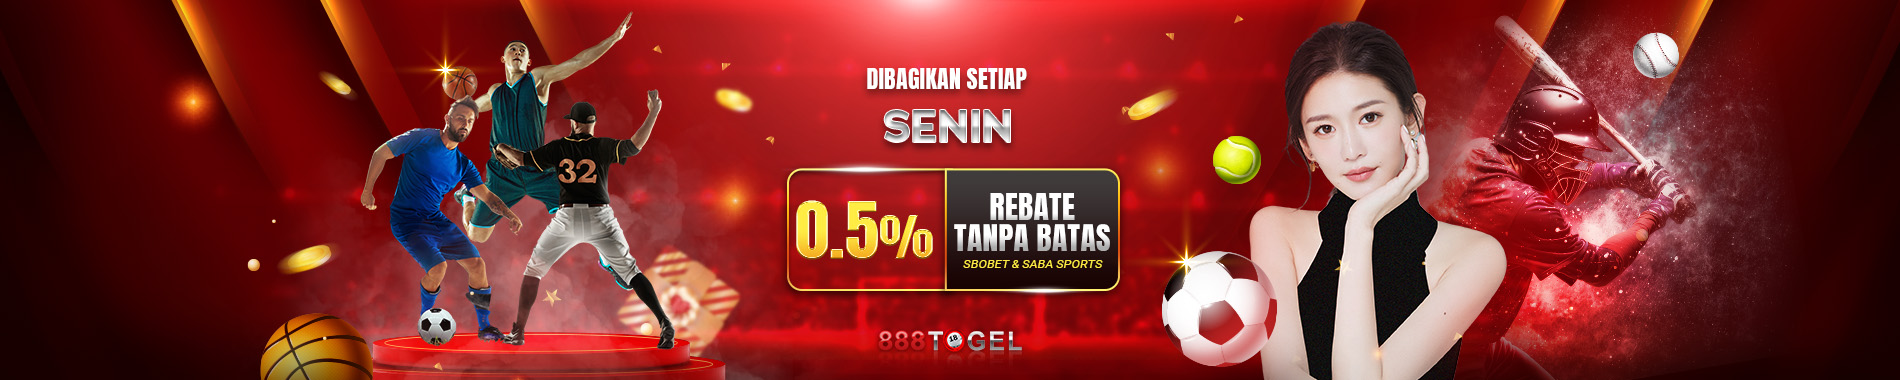 888Togel Rebate Tanpa Batas 0.5% - SBOBET